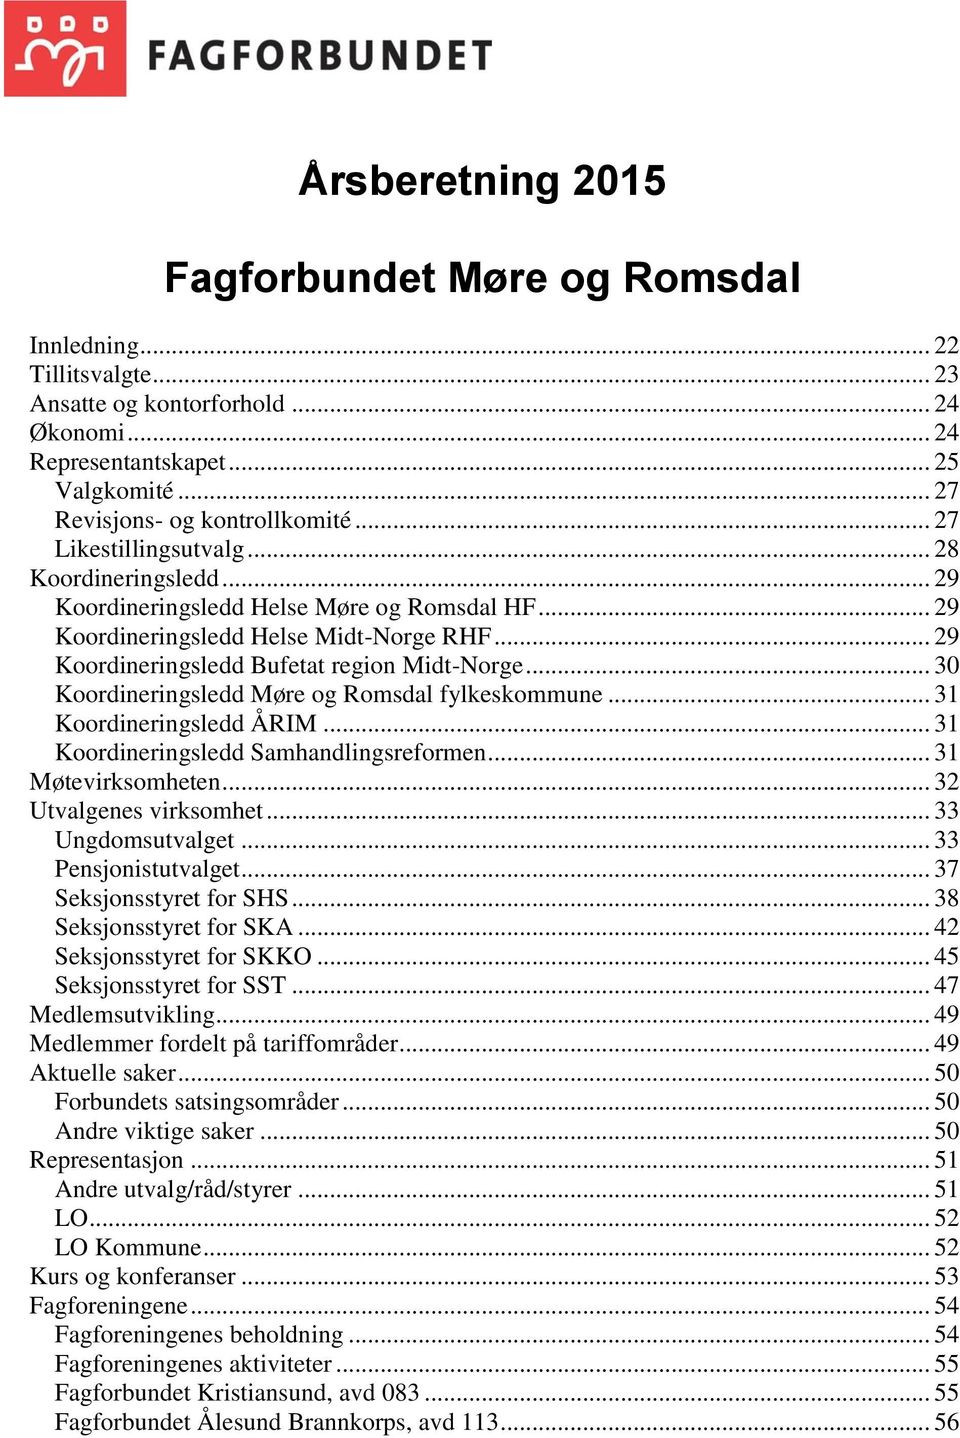 .. 30 Koordineringsledd Møre og Romsdal fylkeskommune... 31 Koordineringsledd ÅRIM... 31 Koordineringsledd Samhandlingsreformen... 31 Møtevirksomheten... 32 Utvalgenes virksomhet... 33 Ungdomsutvalget.